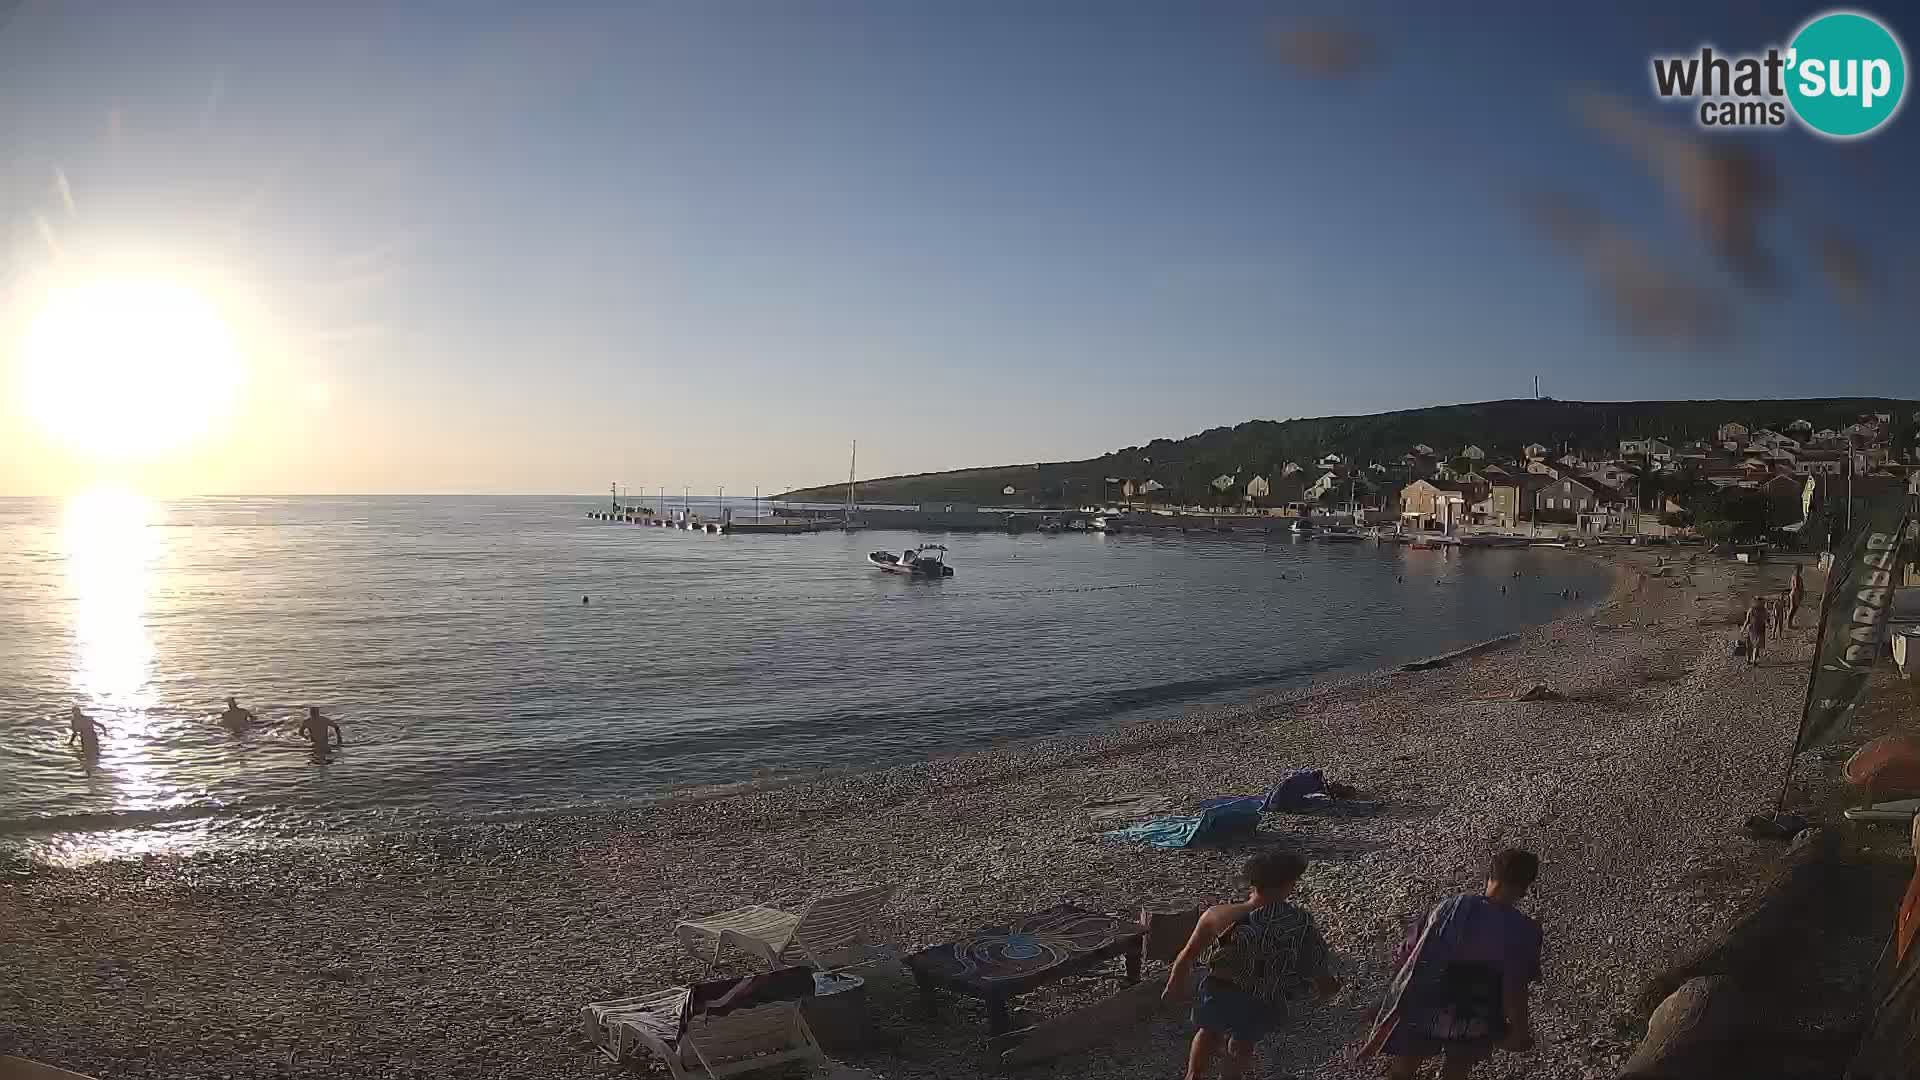 La Spiaggia di Unie webcam